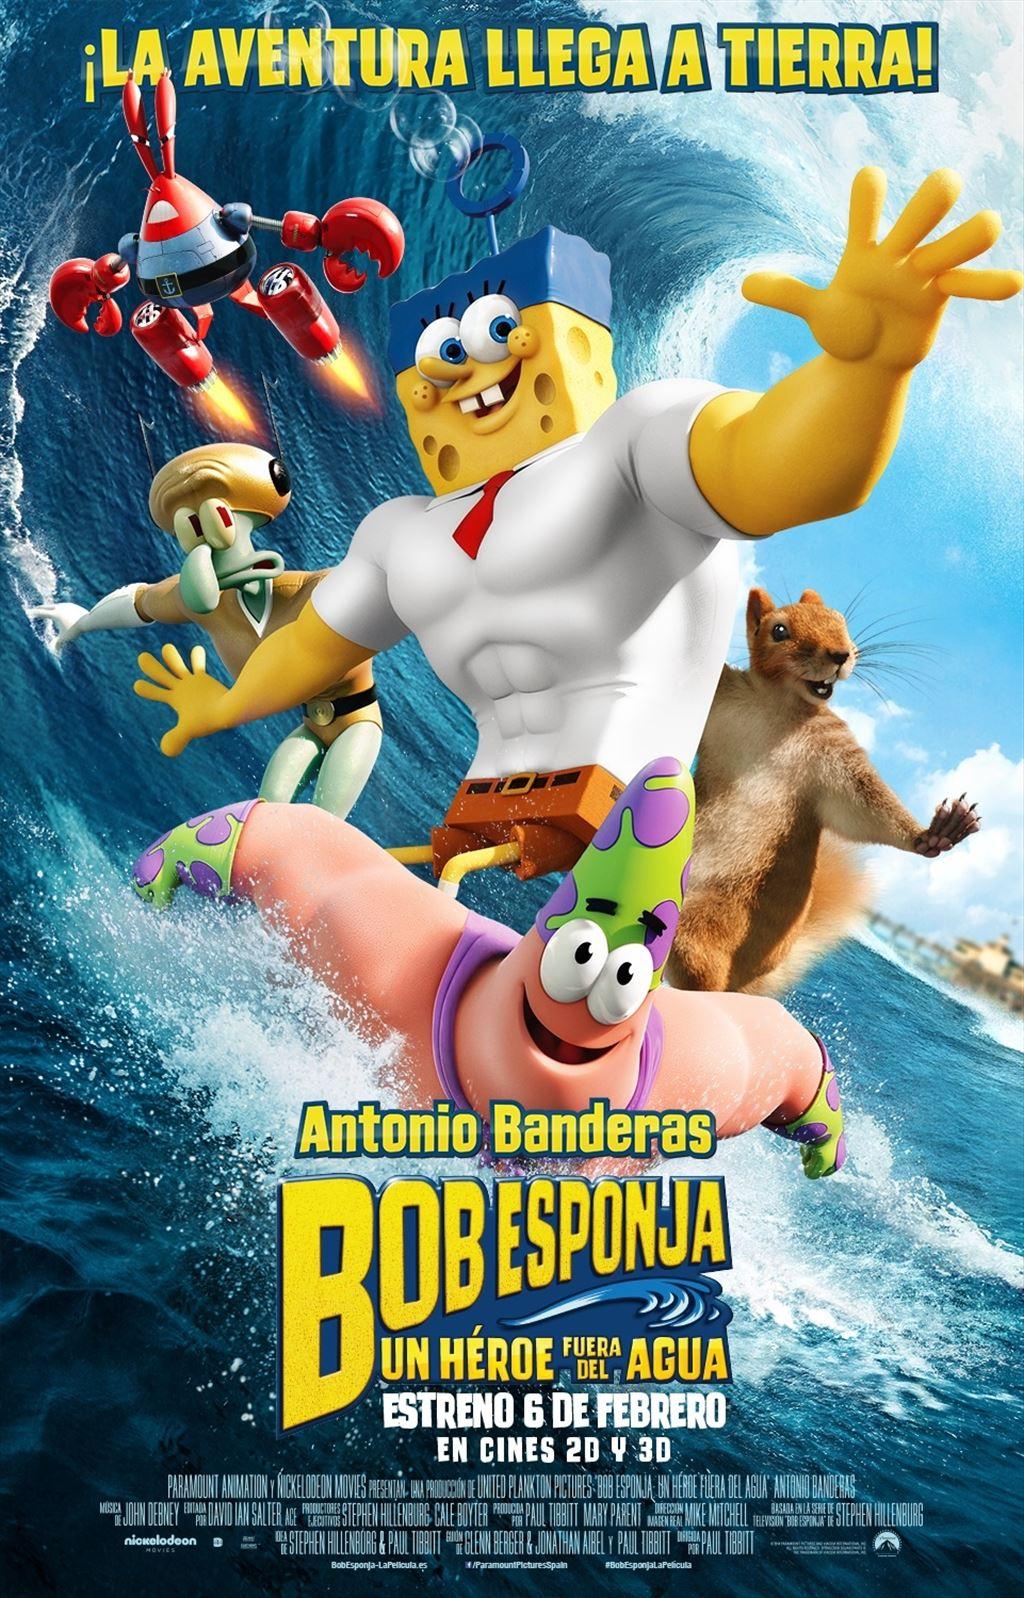 Постер фильма Губка Боб в 3D | SpongeBob Movie: Sponge Out of Water